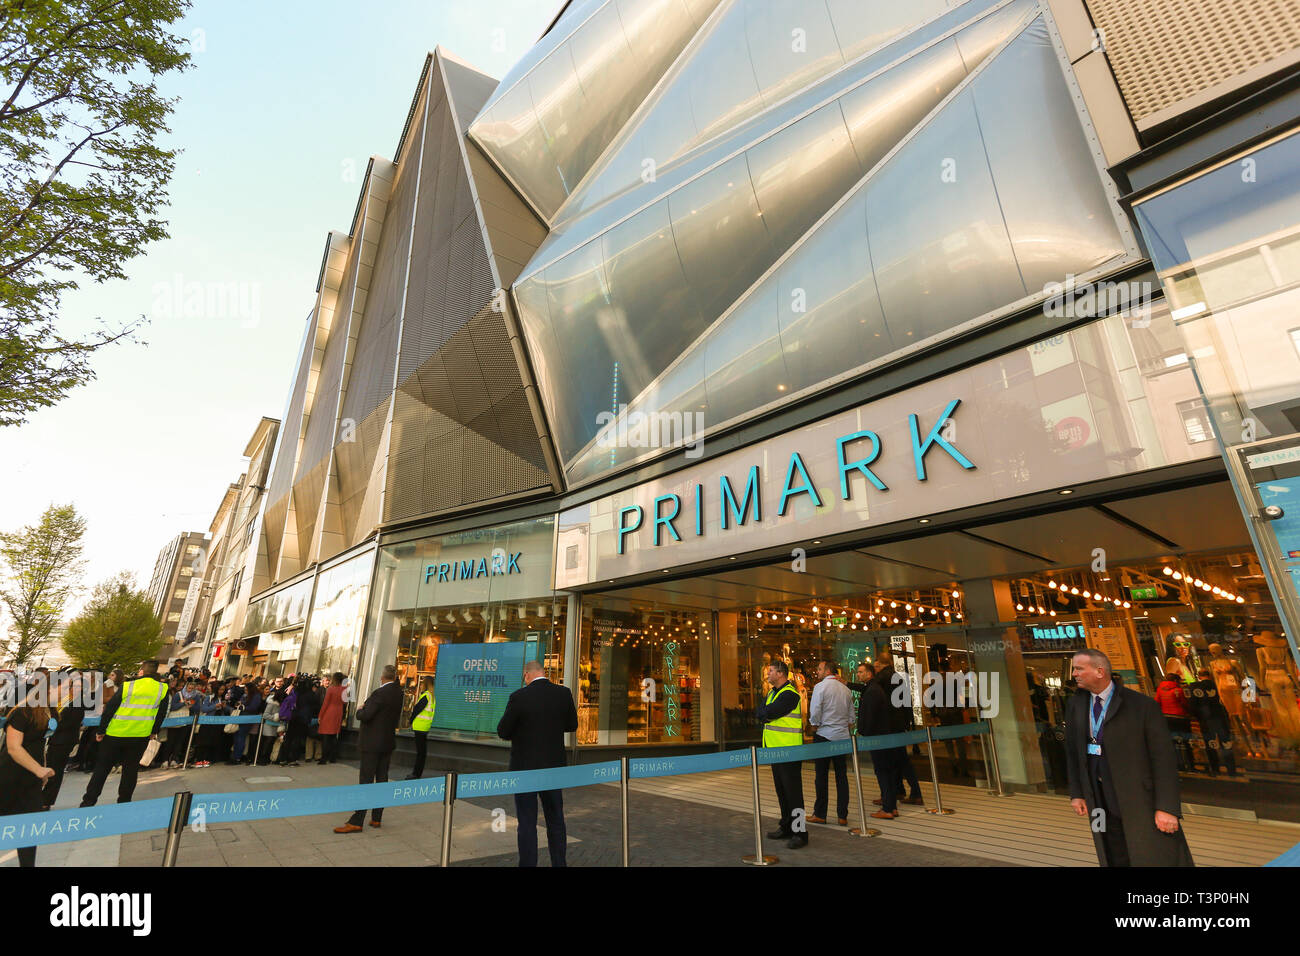 Birmingham, UK. Apr 11, 2019. Le plus grand Primark store s'ouvre aujourd'hui à Birmingham, en tant que clients de la file d'entrée. Crédit : Peter Lopeman/Alamy Live News Banque D'Images